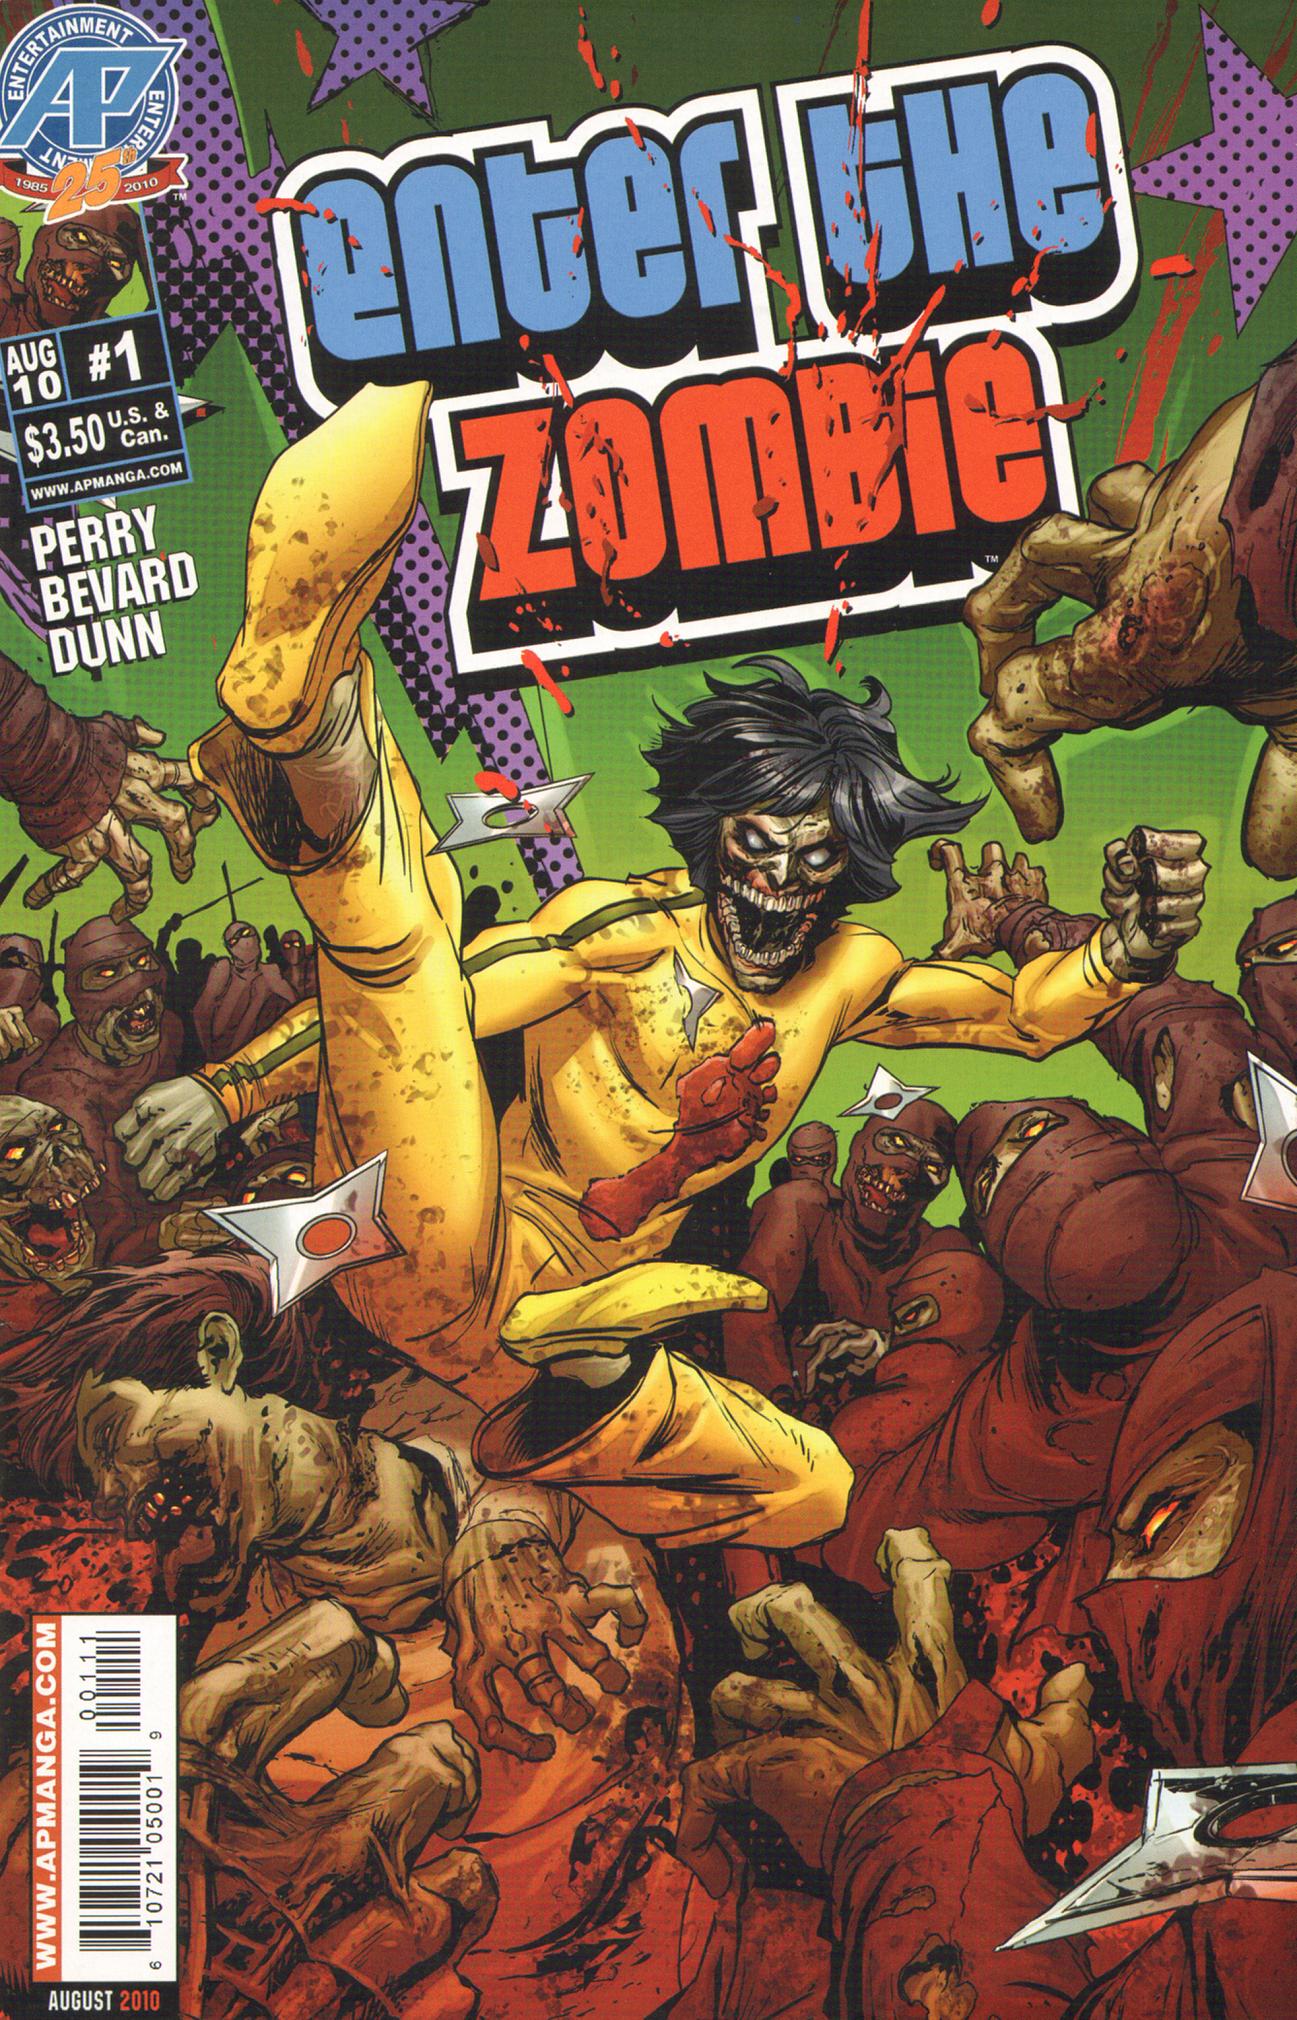 Читать комиксы зомби